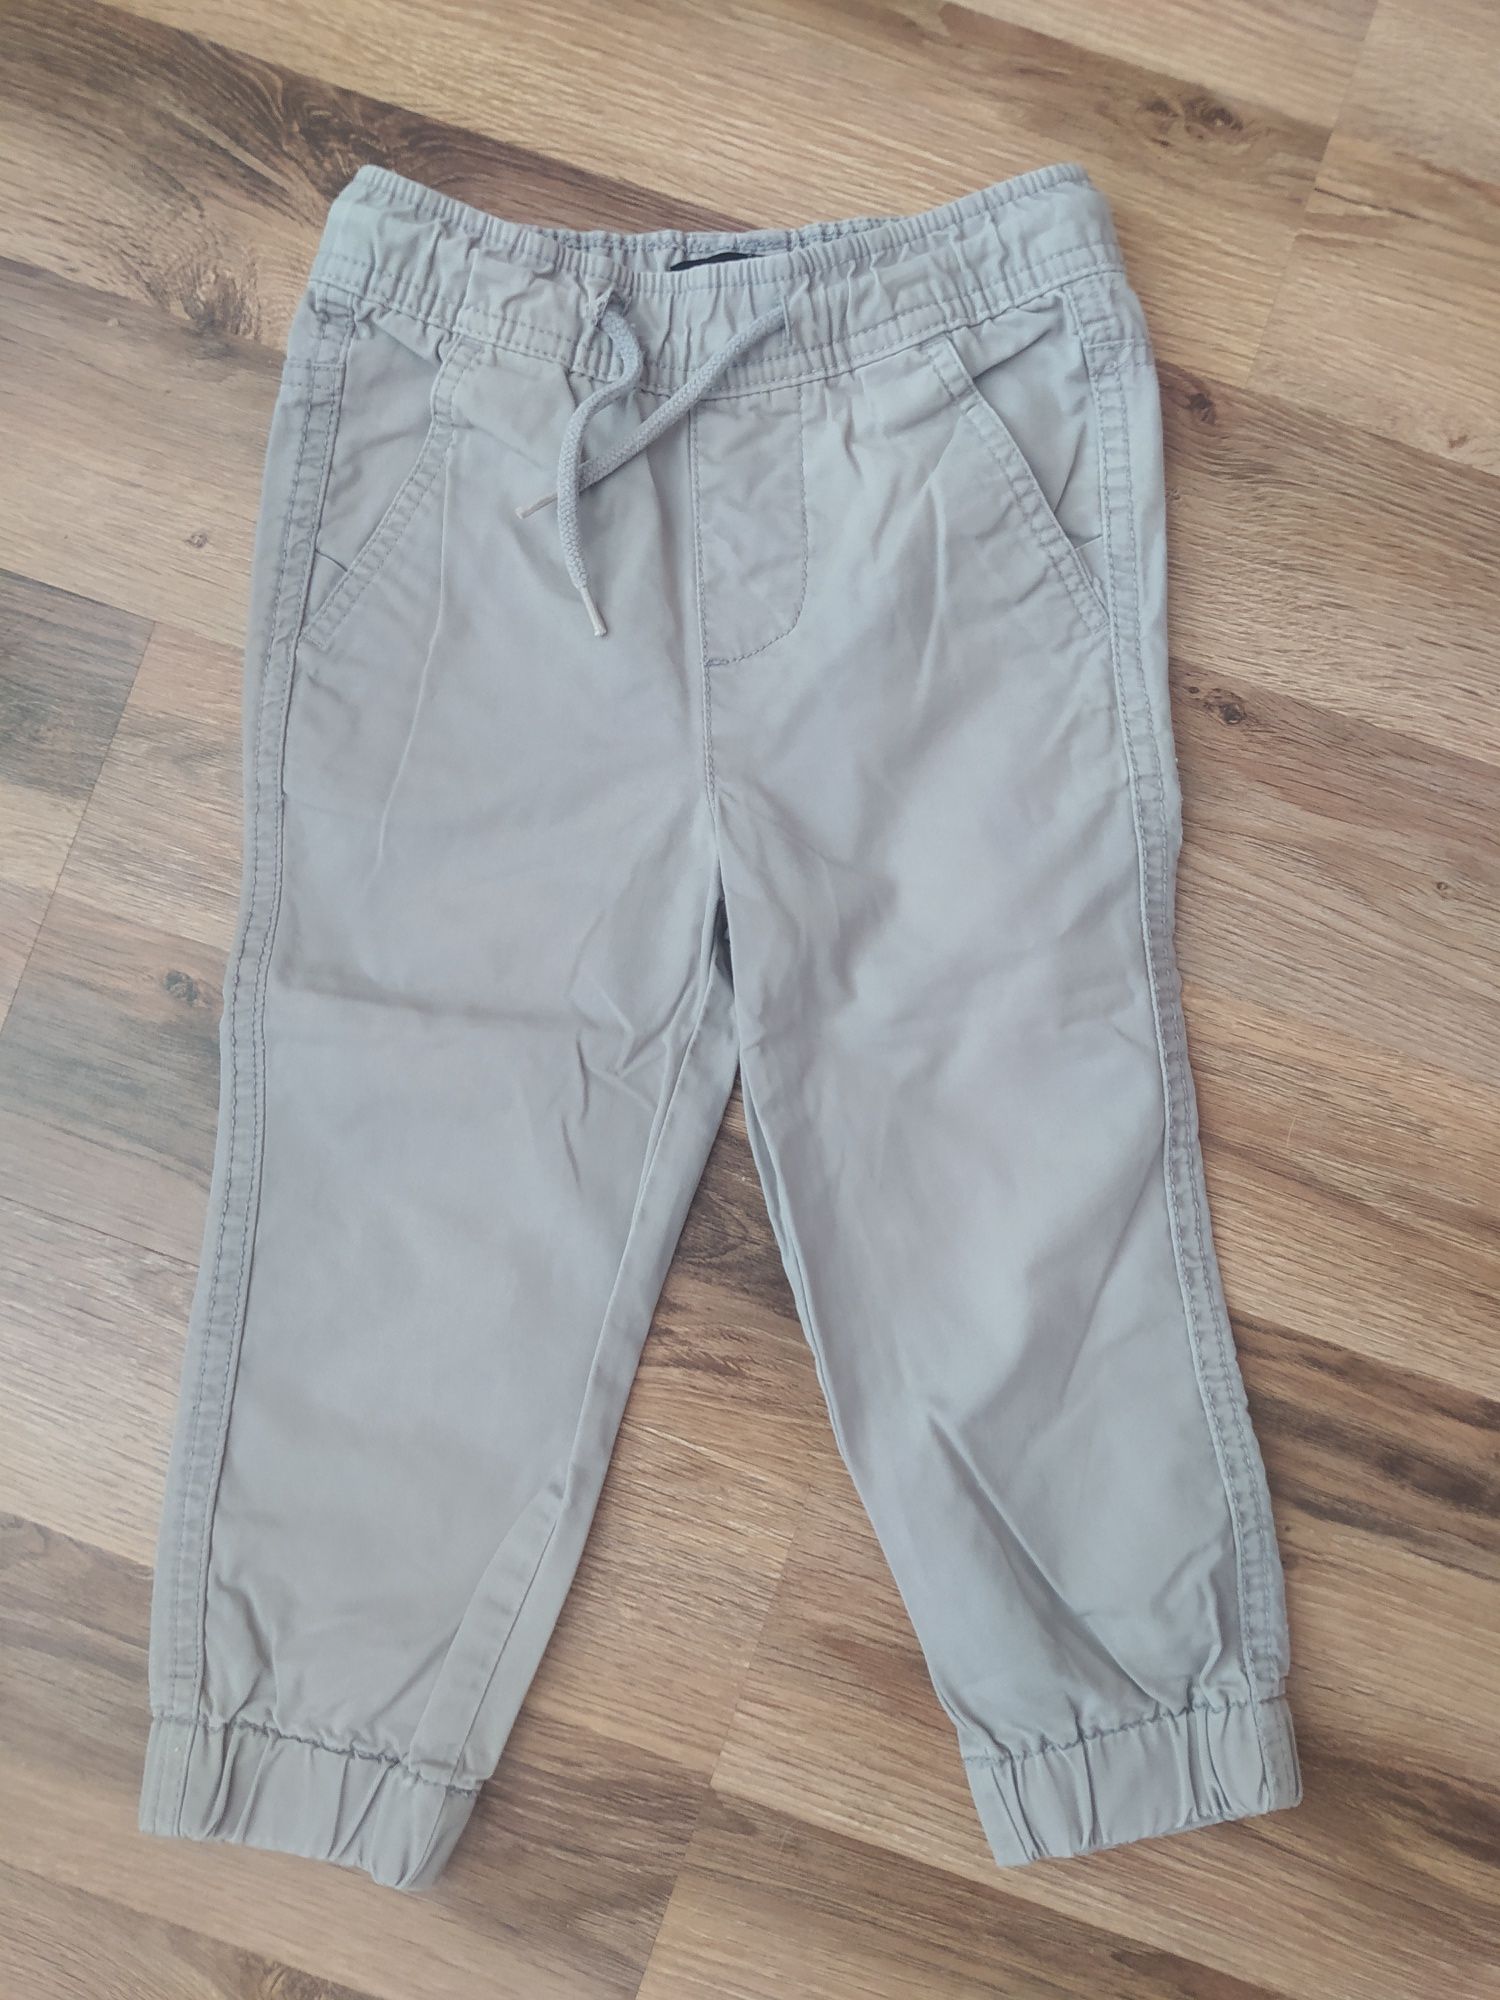 Штаны, джинсы, джогеры Reserved 2-3 года